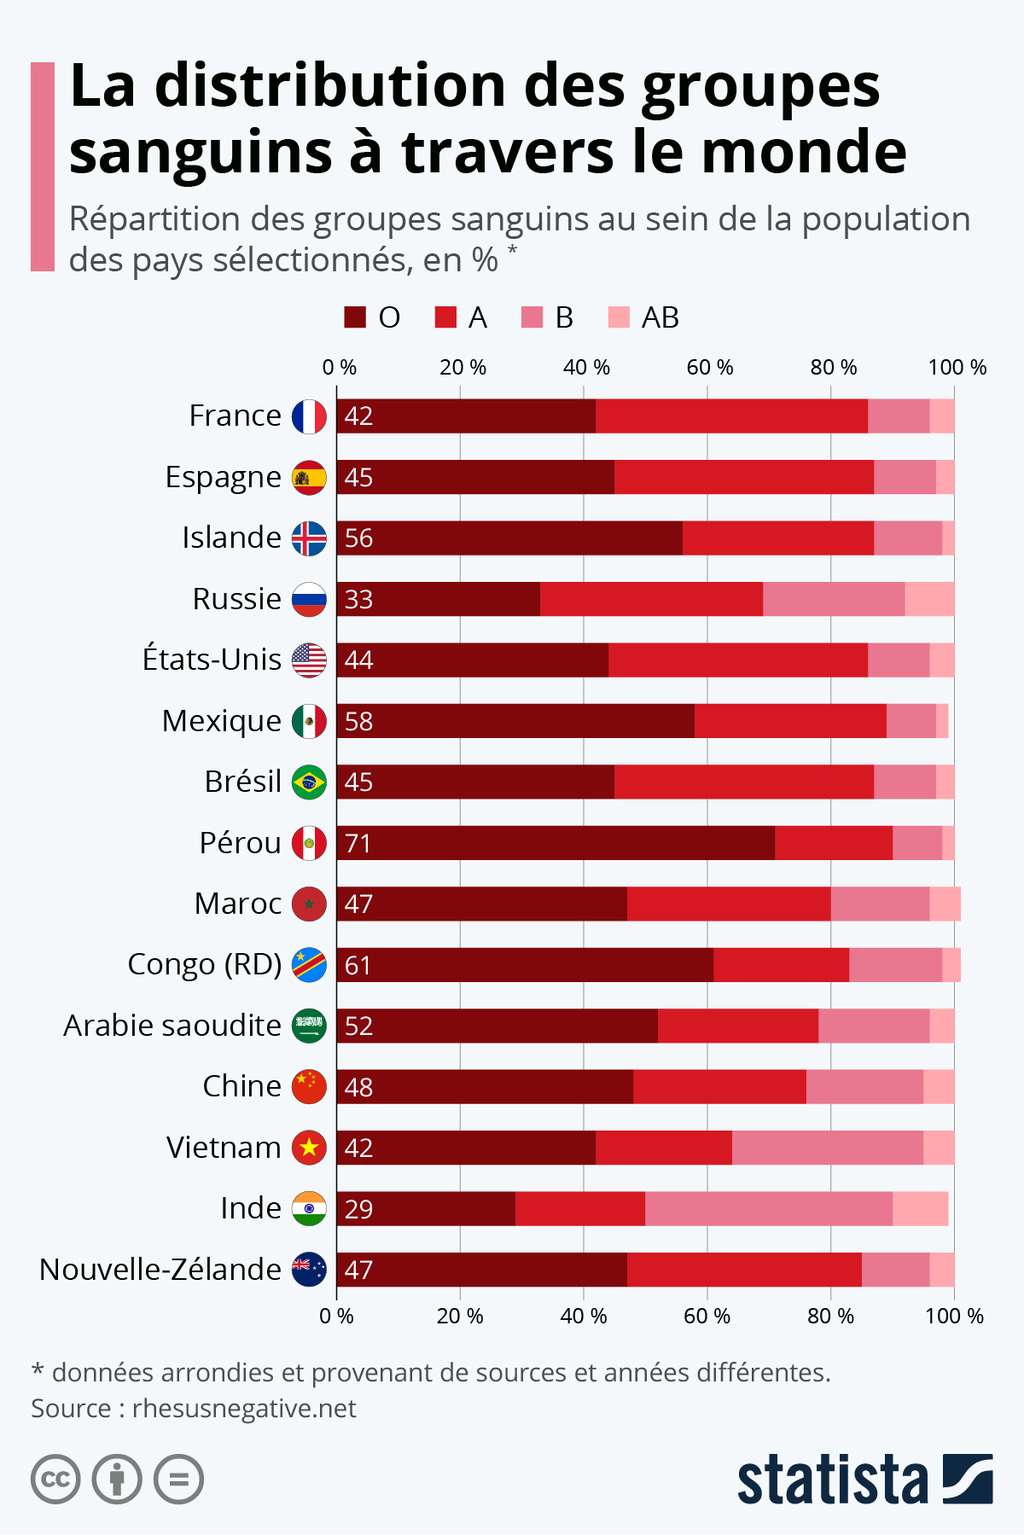 Les groupes sanguins les plus répandus dans différents pays. © Statista